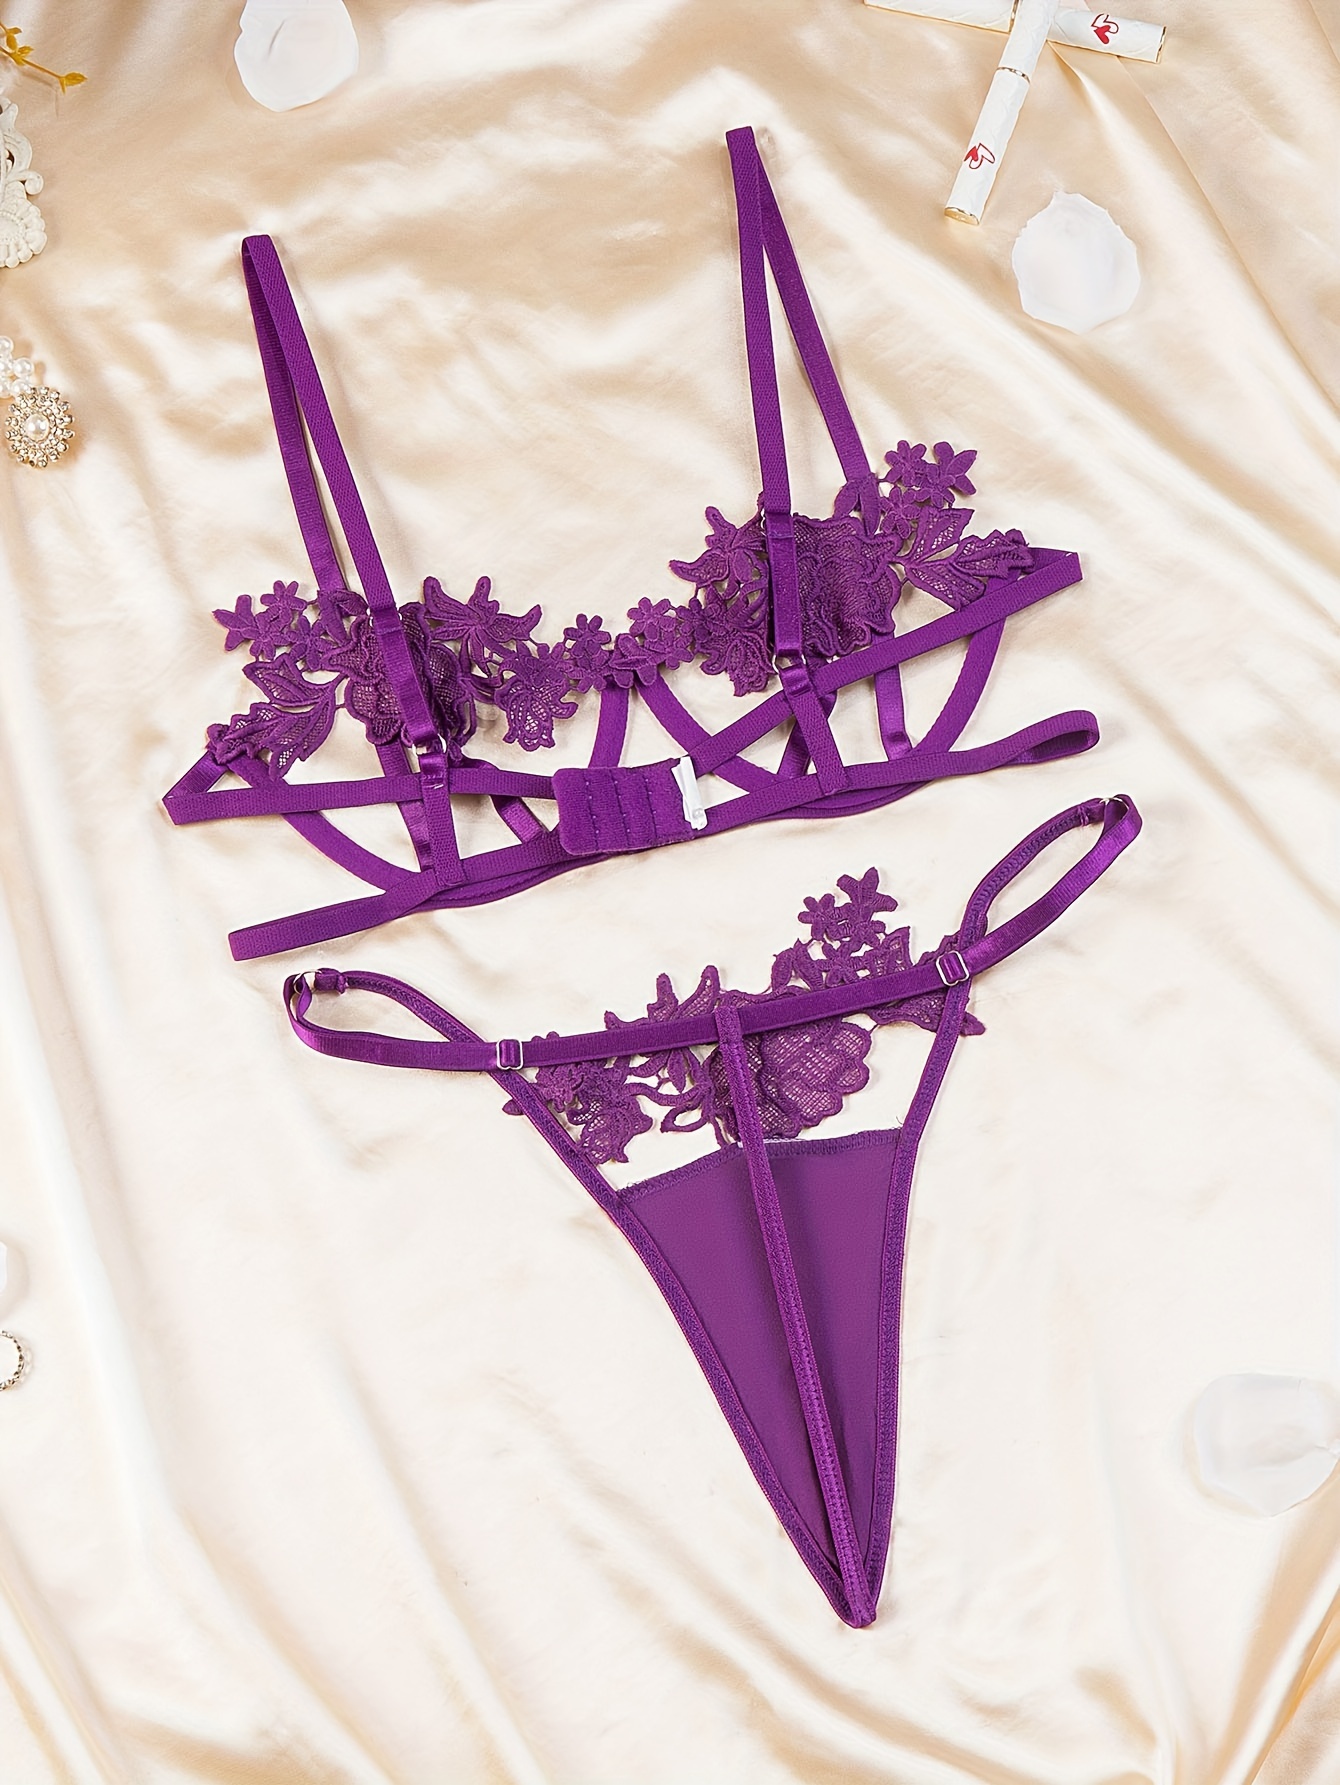 Bra & Panty Sets Lavender Lace 3-Piece Adult's Sexy Lingerie 